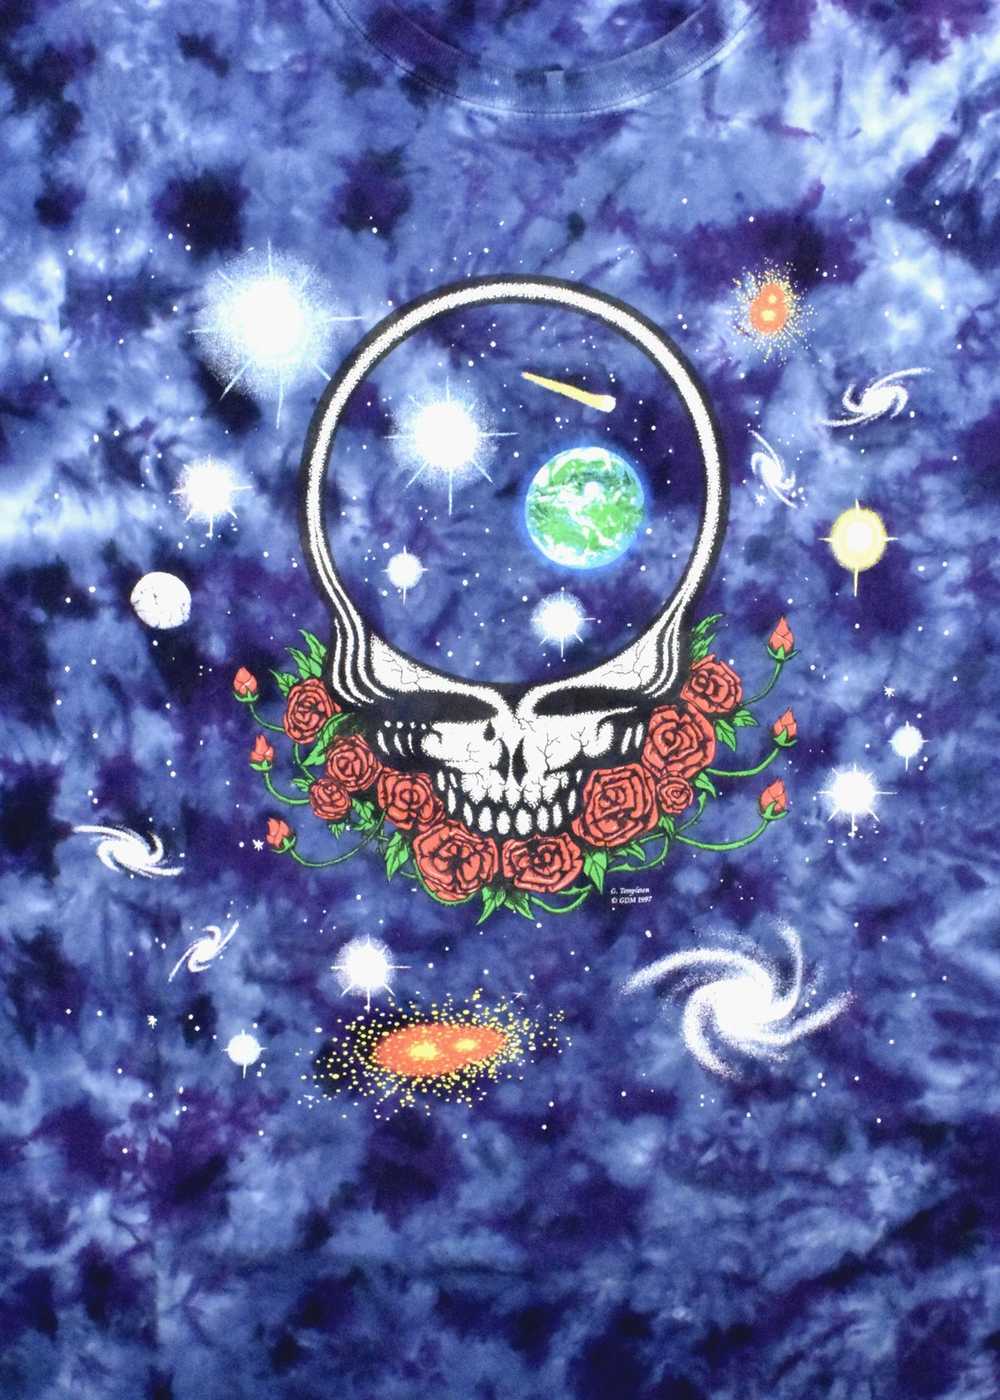 1997 Grateful Dead T-Shirt, Space Your Face - image 5